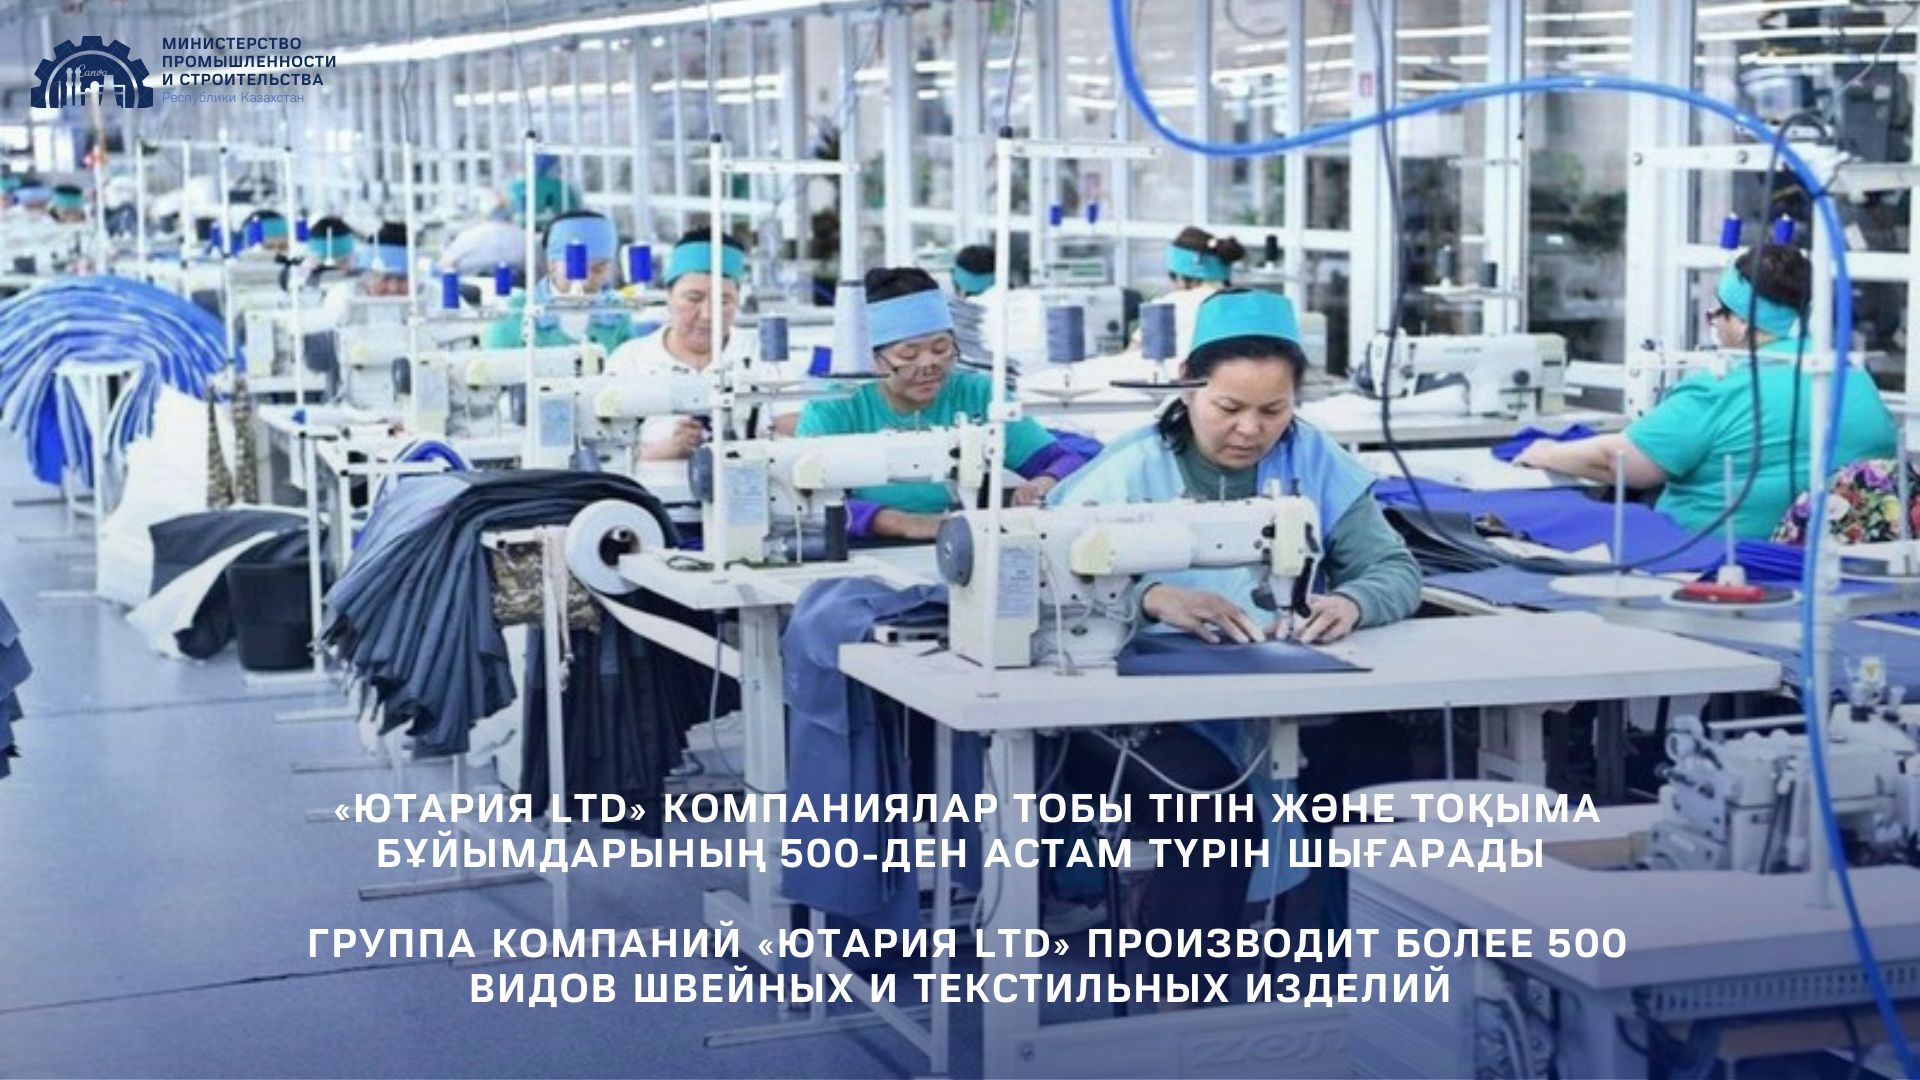 Группа компаний «Ютария ltd» производит более 500 видов швейных и текстильных изделий